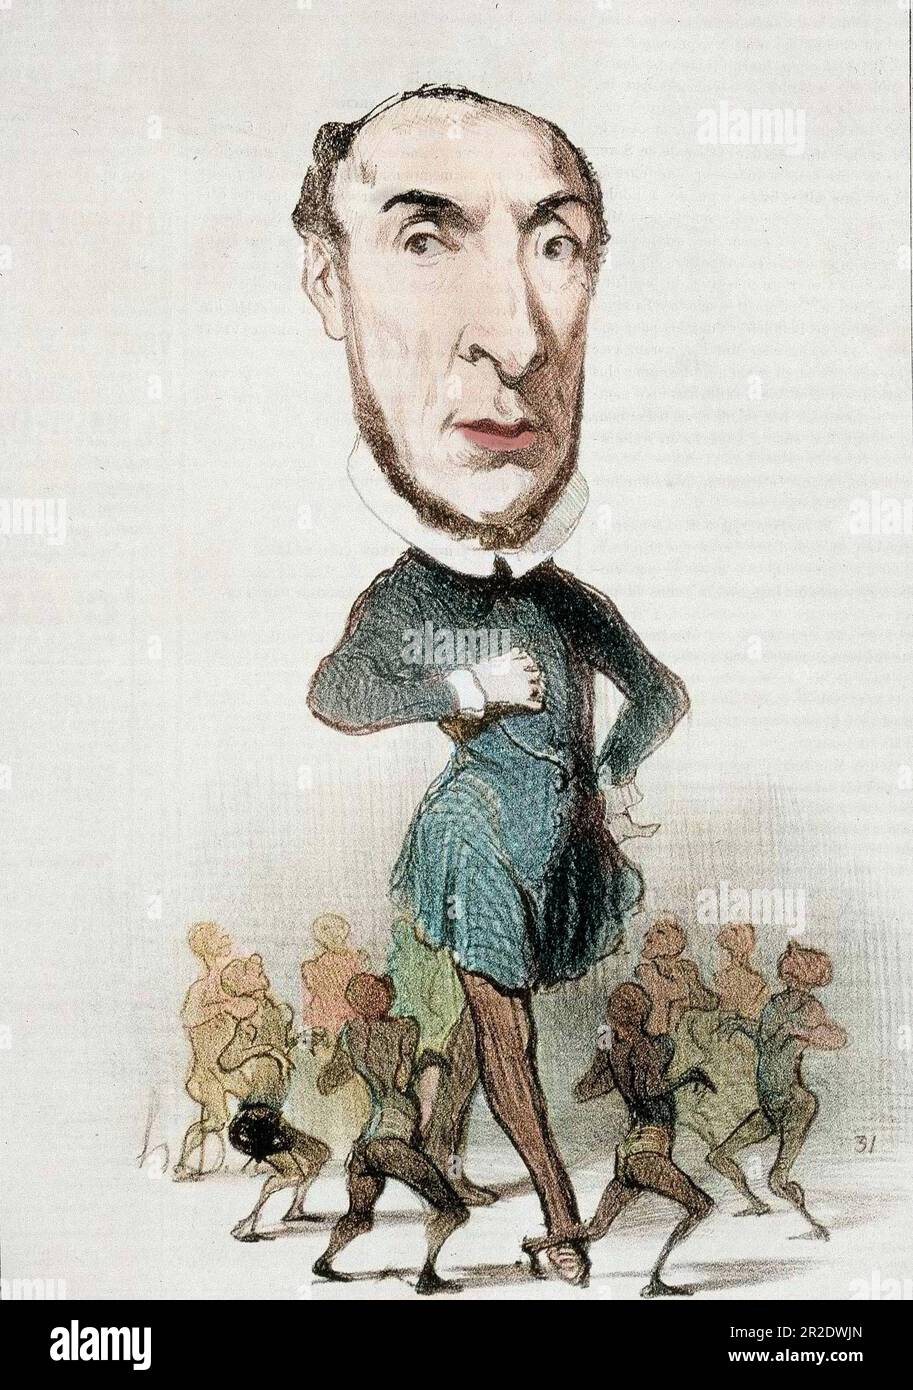 Caricature sur Victor Schoelcher et l'abolition de l'esclavage - par Honore Daumier in 'Charivari' du 16/04/1849 - colorié ultérieurement Foto Stock